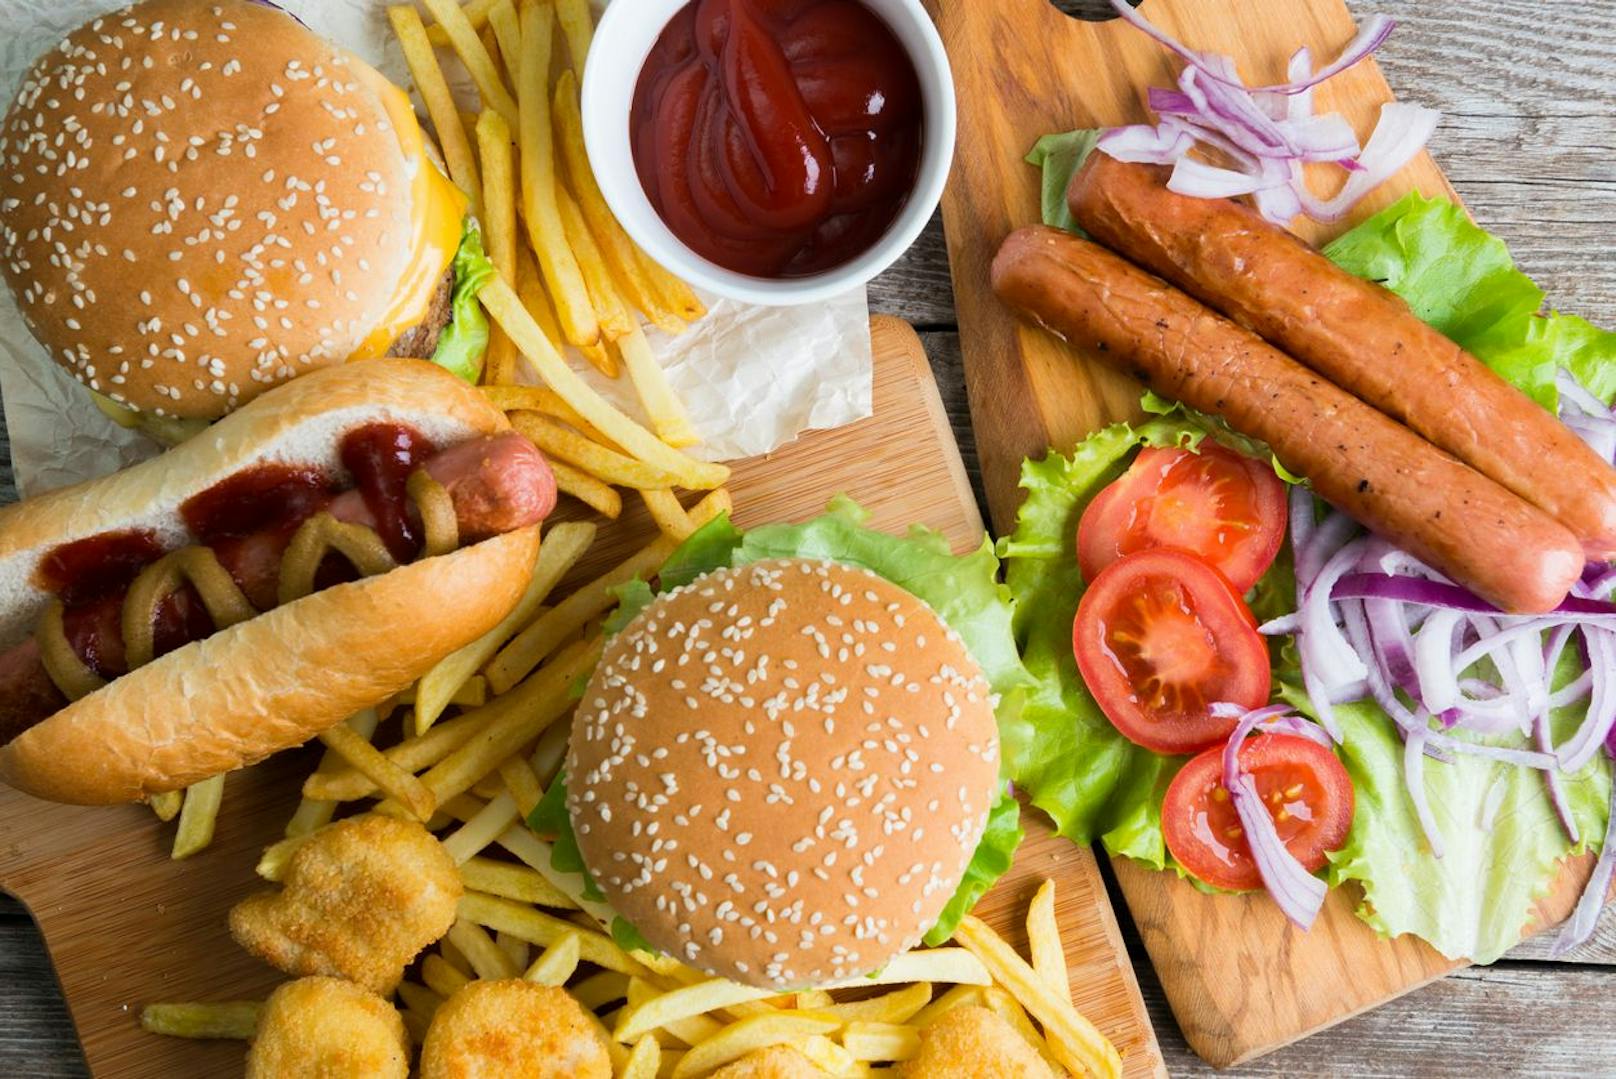 Hot Dog, Burger &amp; Co. - gesund ist das alles nicht.